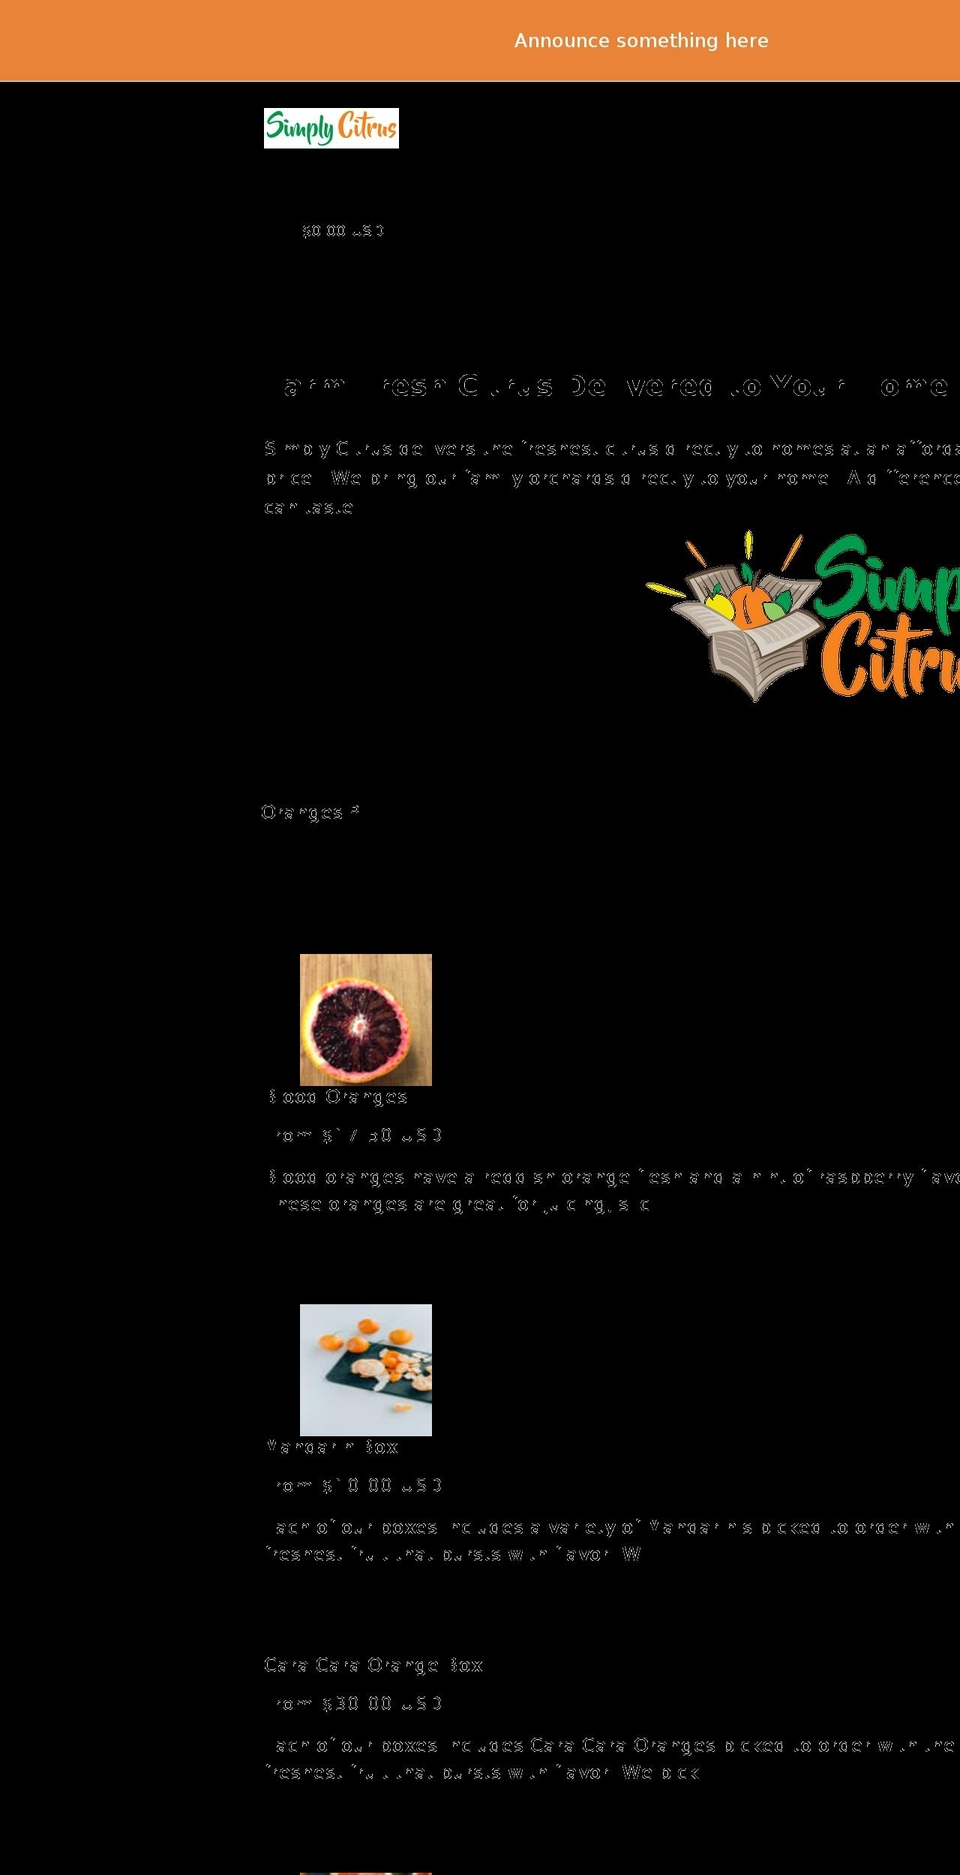 simplycitrus.com shopify website screenshot